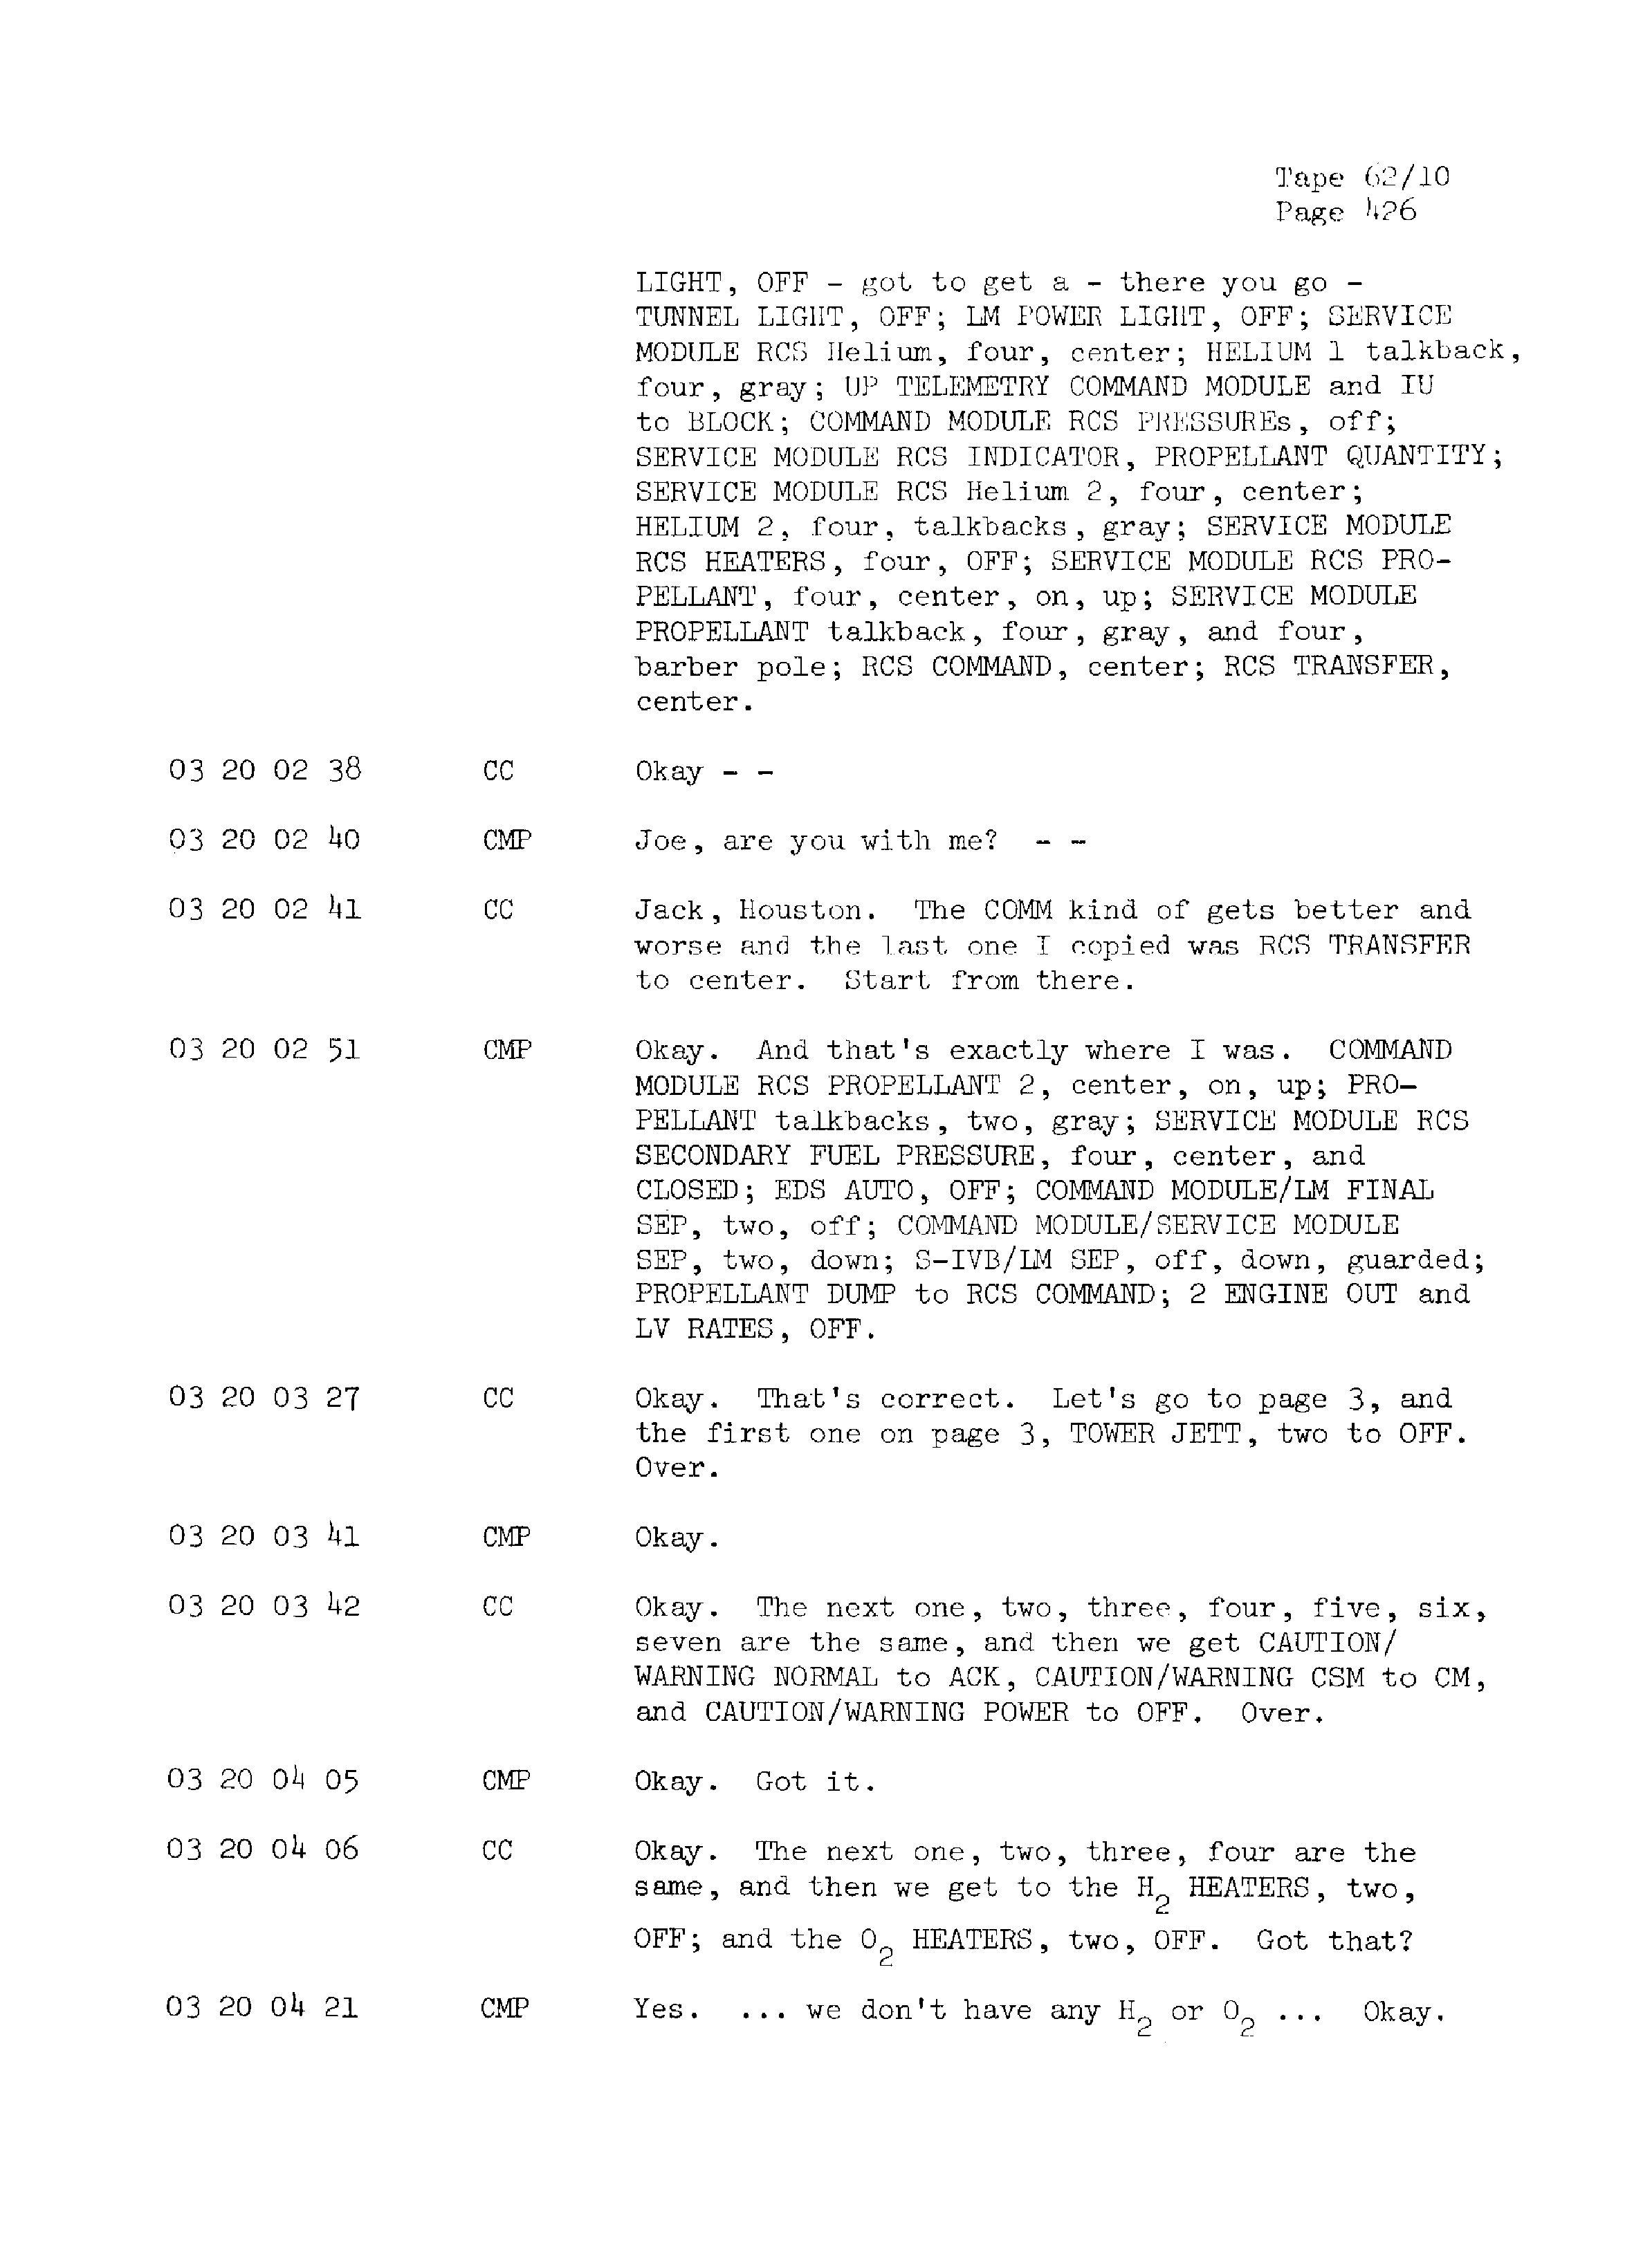 Page 433 of Apollo 13’s original transcript